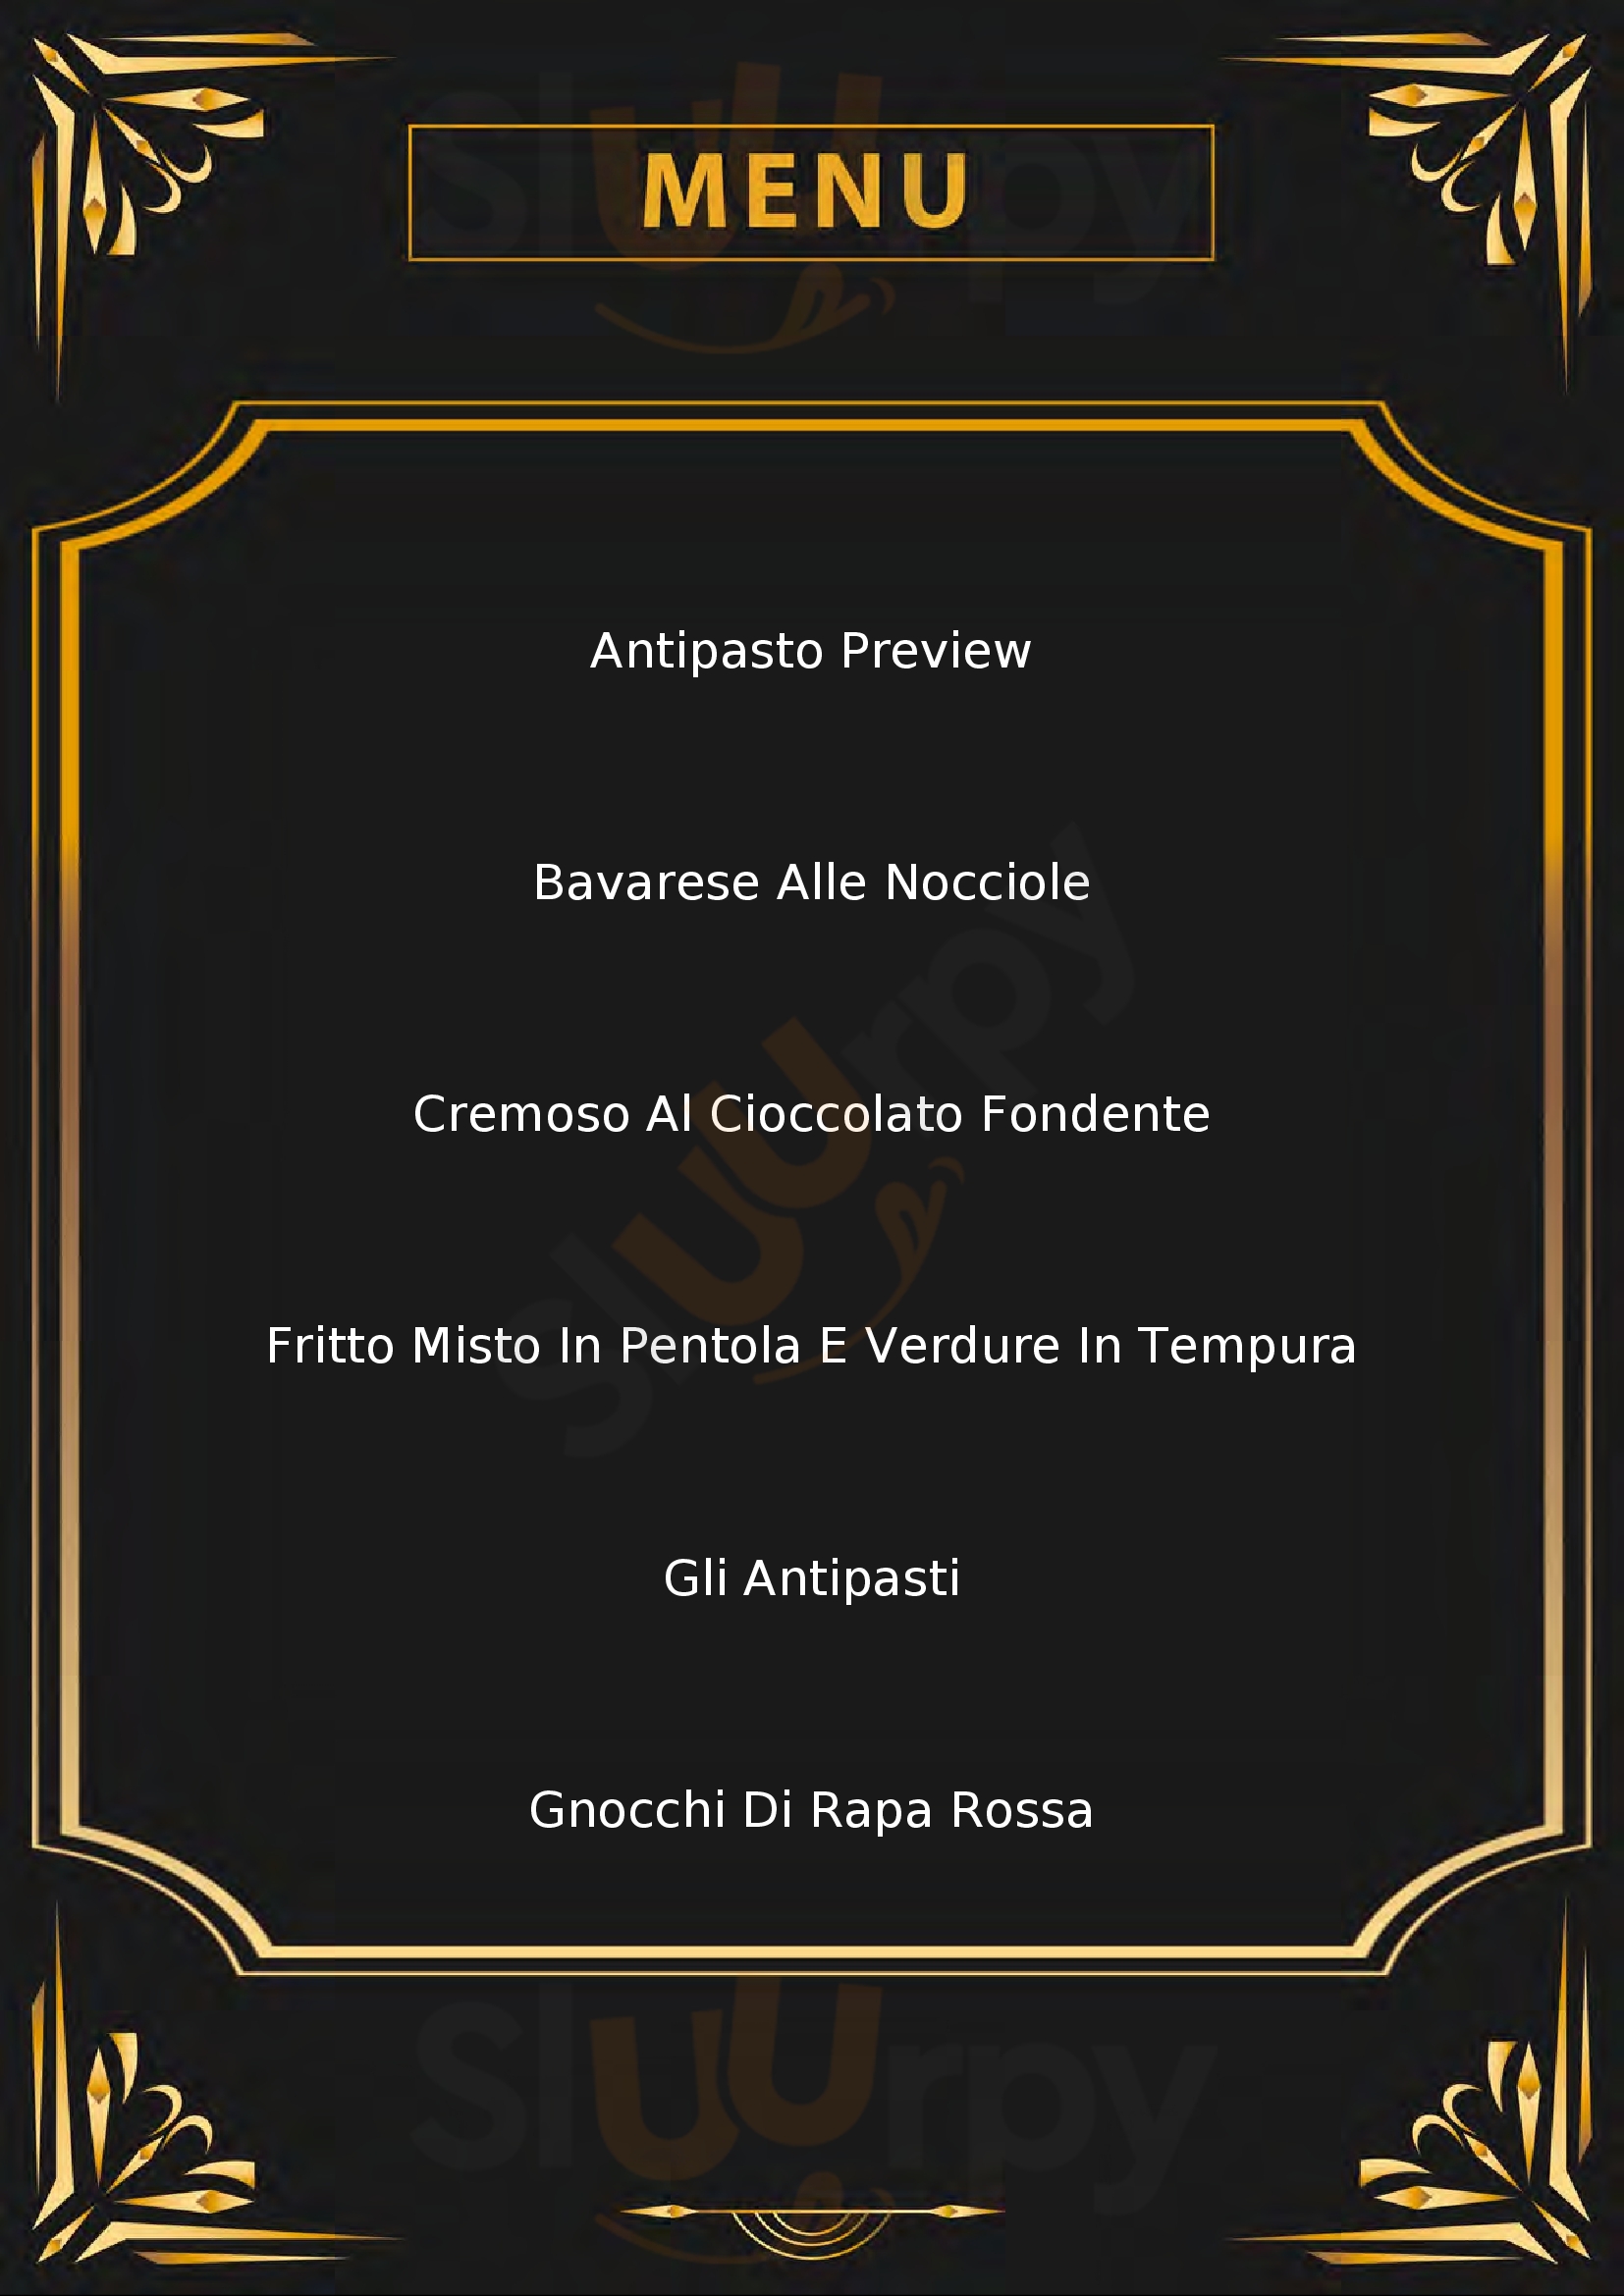 A_Grillo Restaurant & Wine Imperia menù 1 pagina